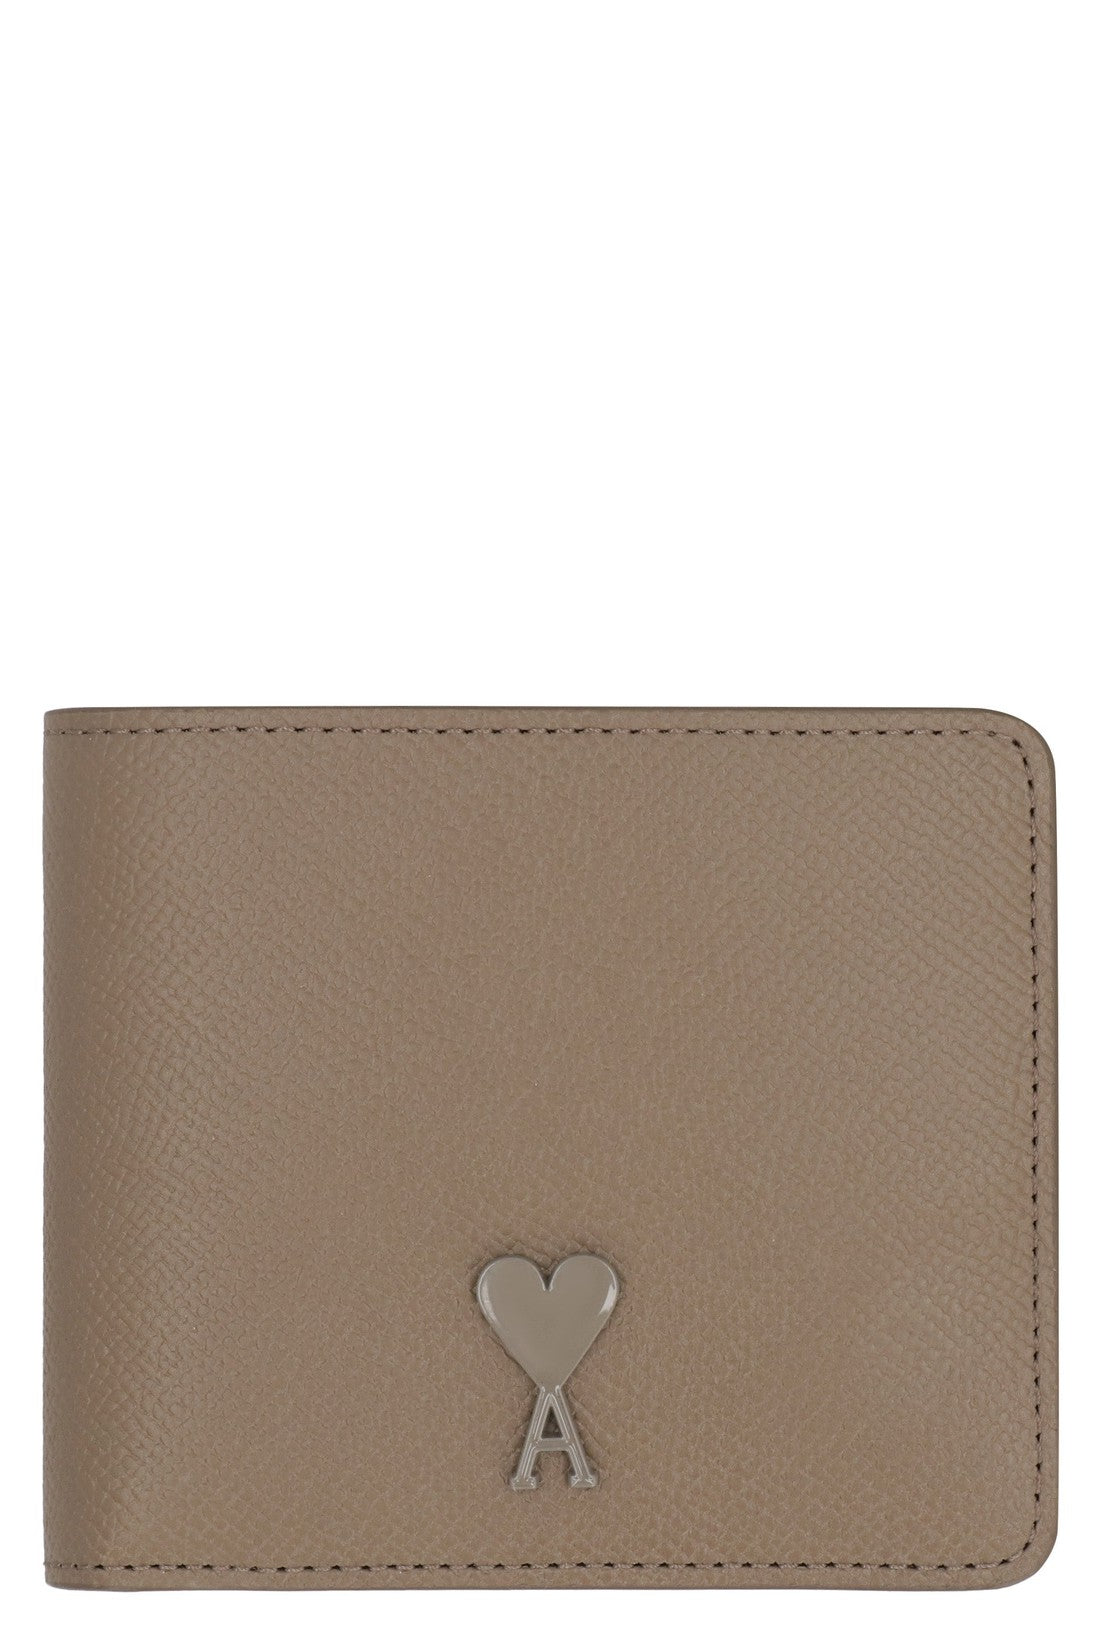 AMI PARIS-OUTLET-SALE-Leather wallet-ARCHIVIST